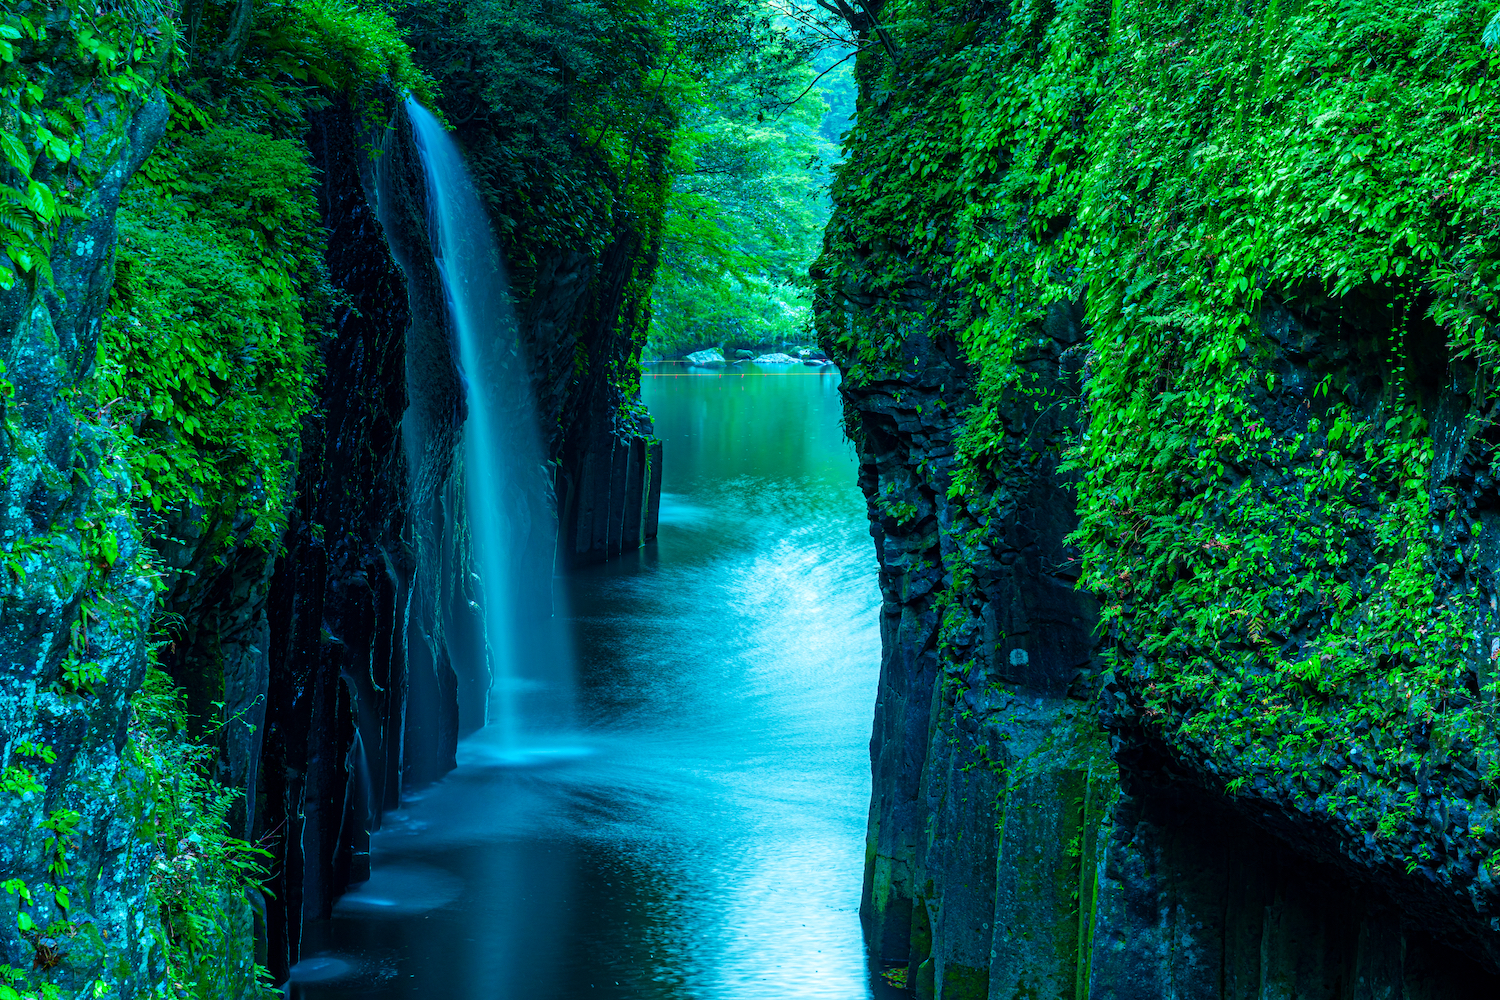 Waterfall in forest in Takachiho, Miyazaki, Japan